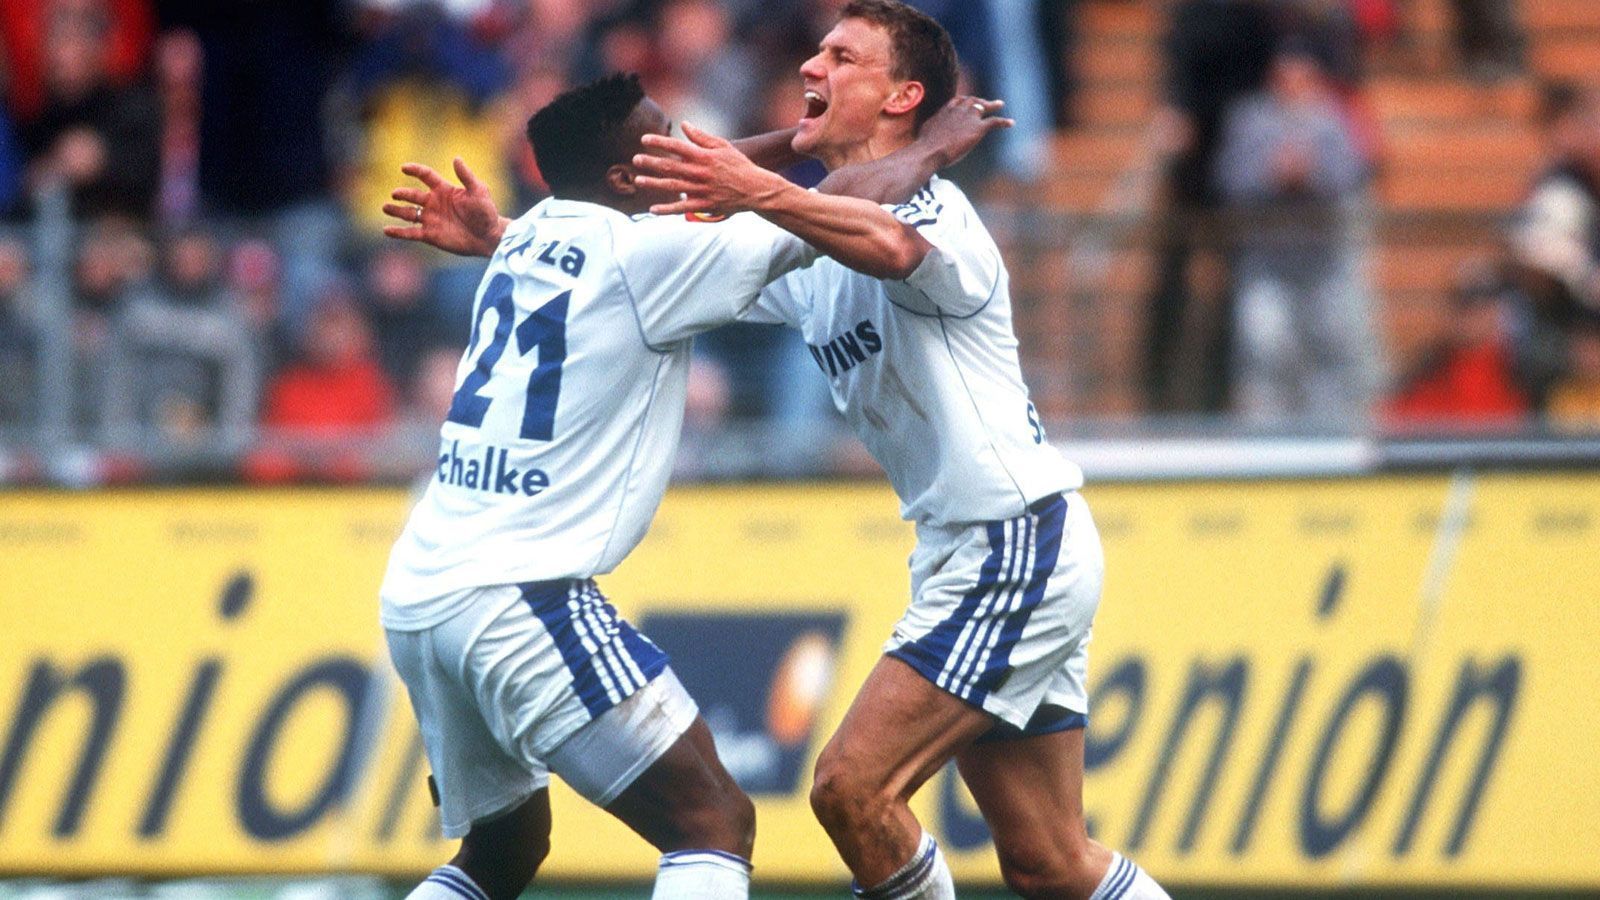 
                <strong>Emile Mpenza und Ebbe Sand (FC Schalke 04)</strong><br>
                Dreierpacker: Ebbe Sand - Vorlagengeber: Emile Mpenza - Ergebnis: 3:1 beim FC Bayern - Datum: 14. April 2001
              